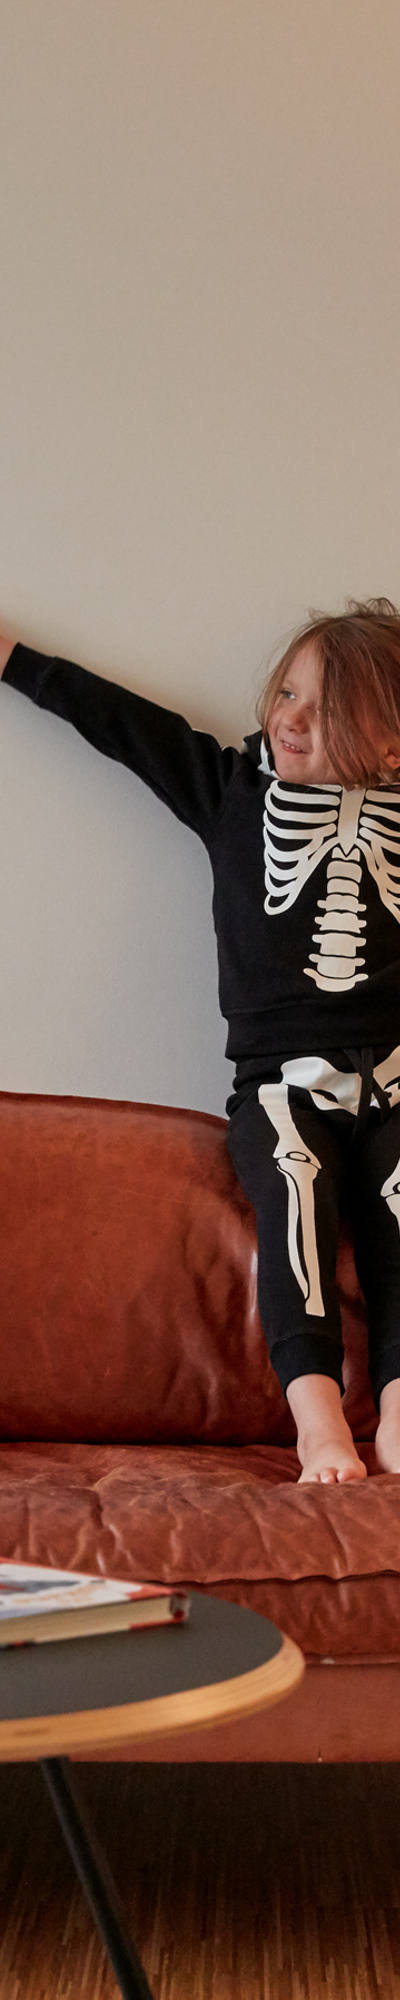 Kind in Skelett-Kostüm